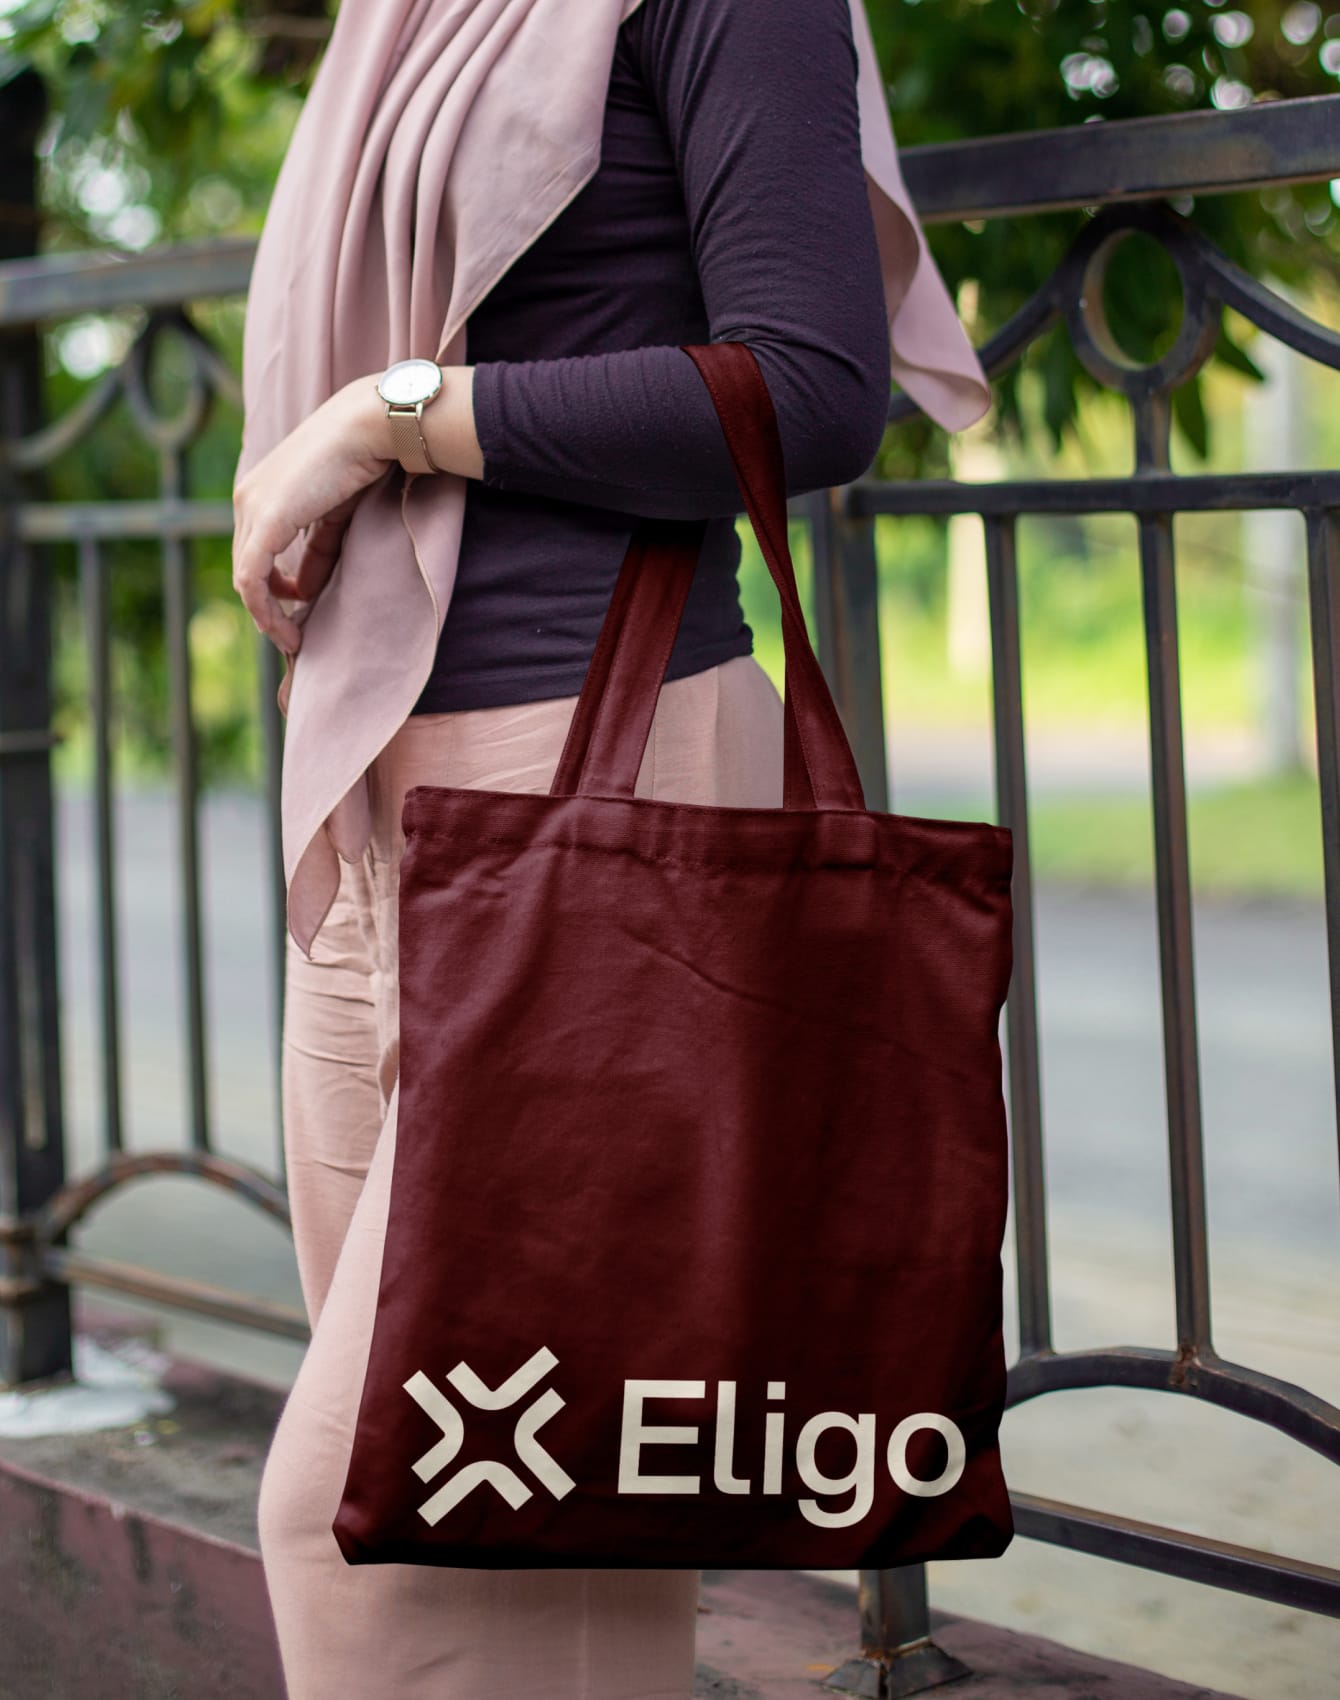 Eligo bag